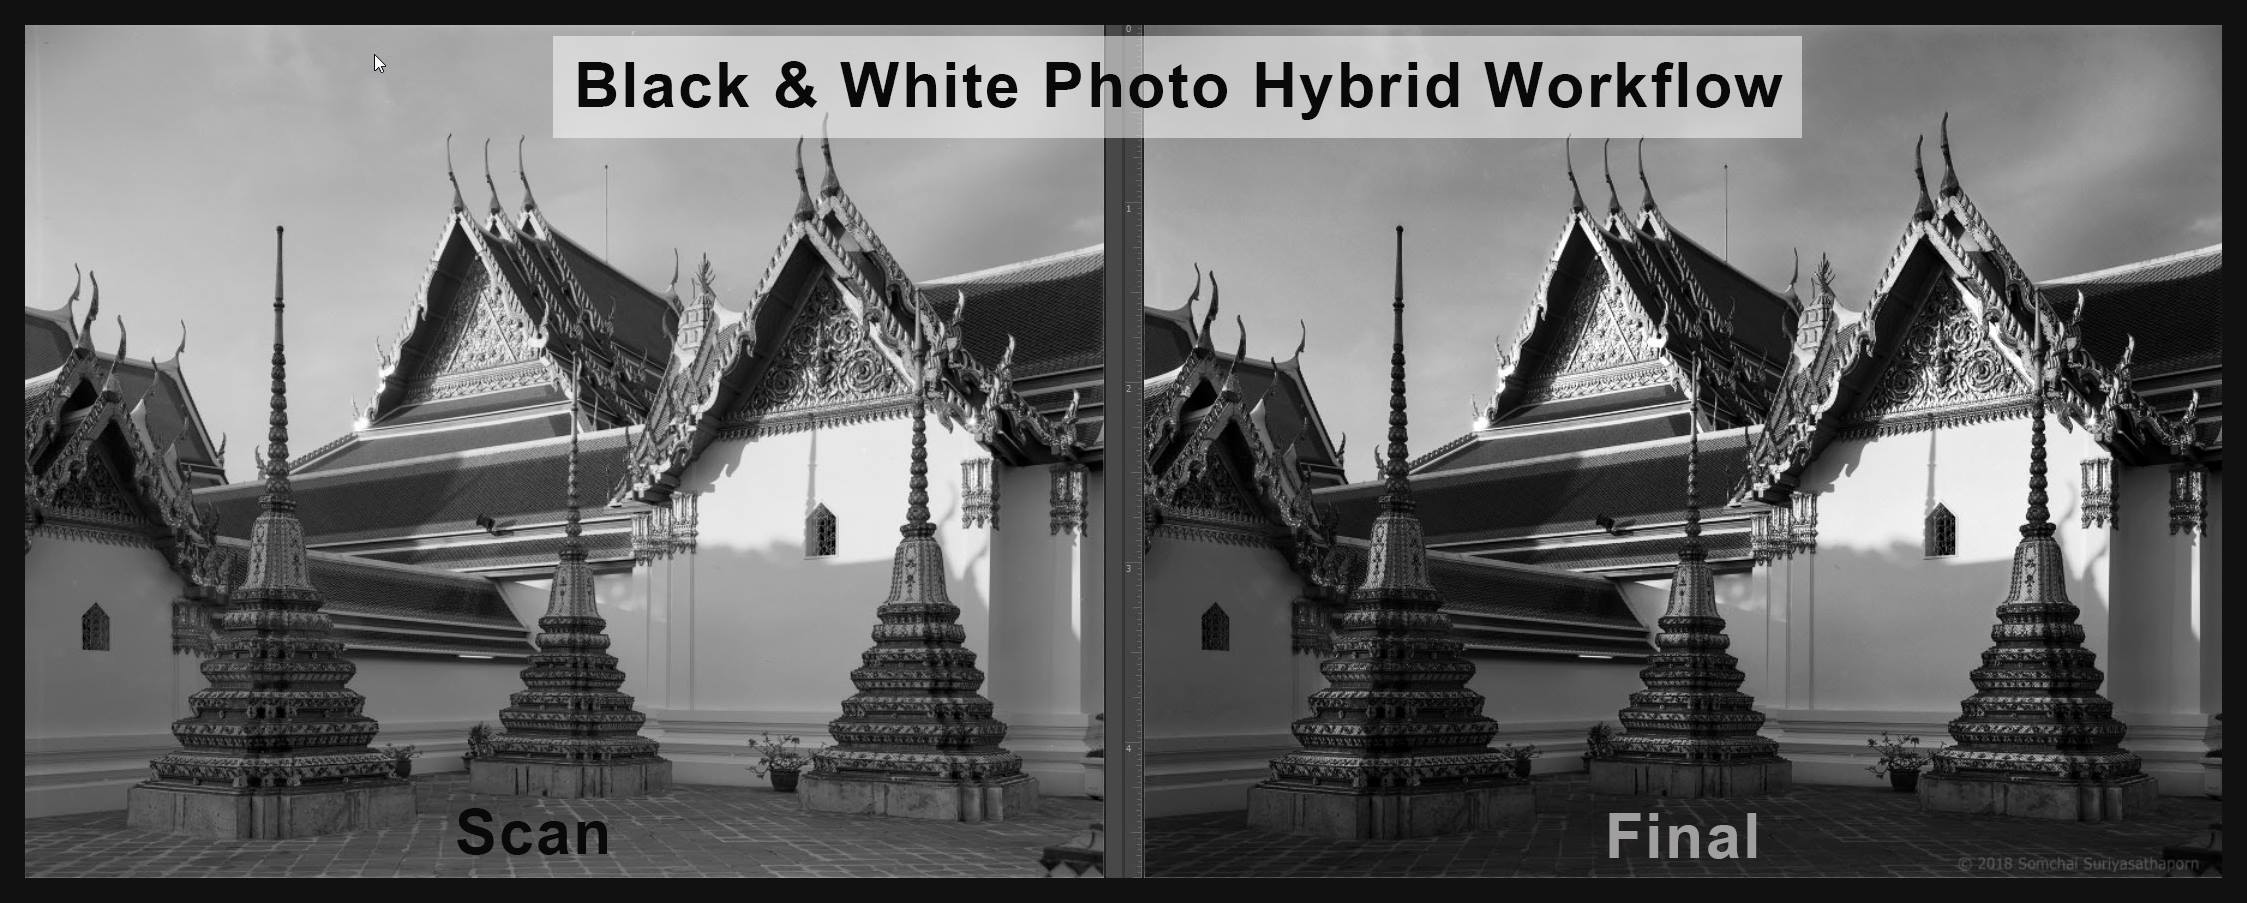 Black & White Photo Hybrid Workflow